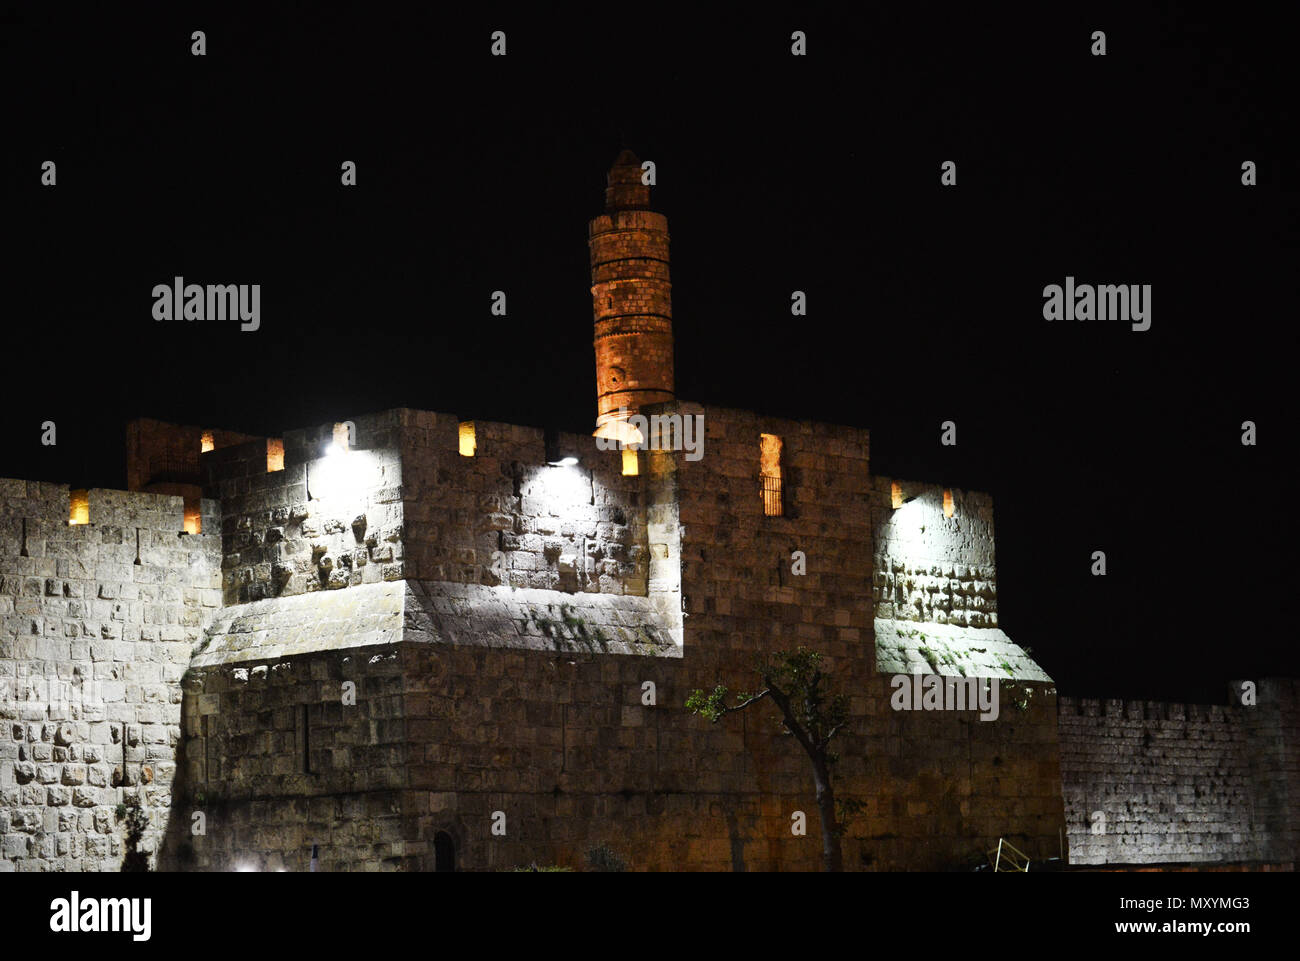 Die Altstadt von Jerusalem Wände in der Nacht. Stockfoto